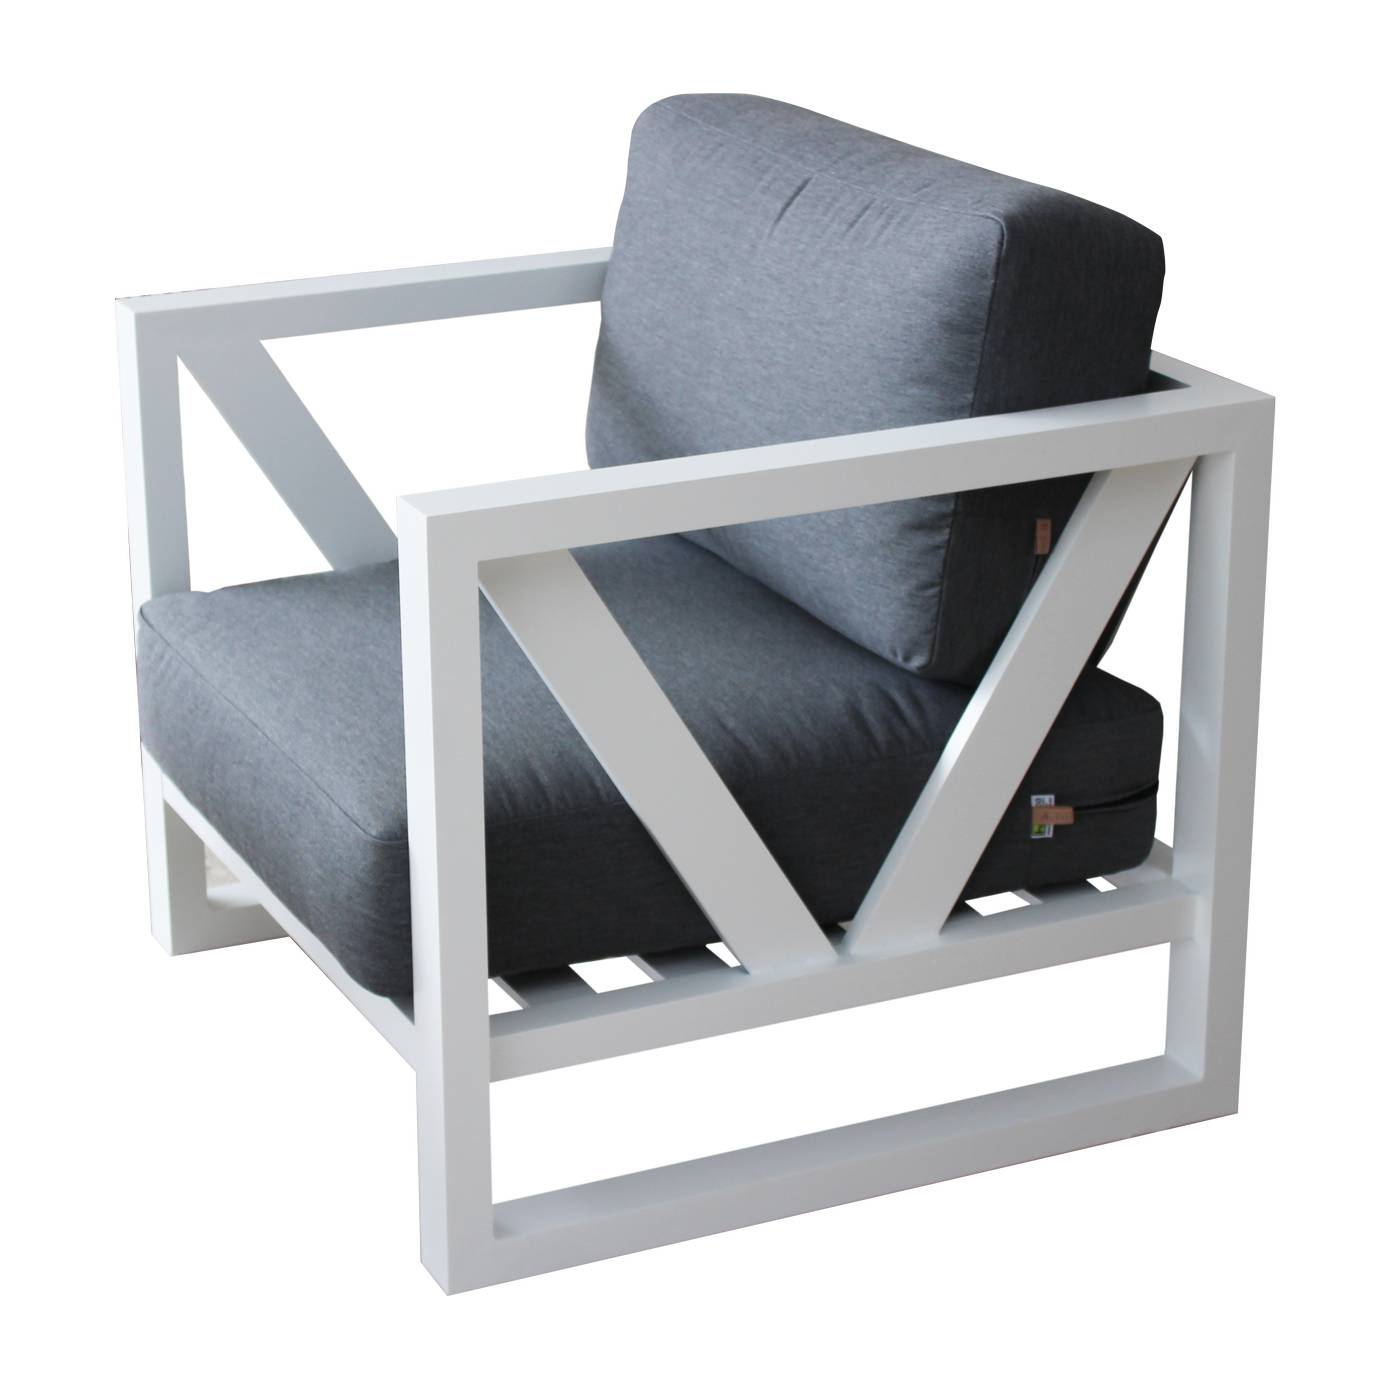 Set Aluminio Luxe Ventus-9 - Lujoso conjunto de aluminio: sofá 2 plazas + 2 sillones + mesa de centro + 2 taburetes. Color conjunto: blanco, antracita o champagne.